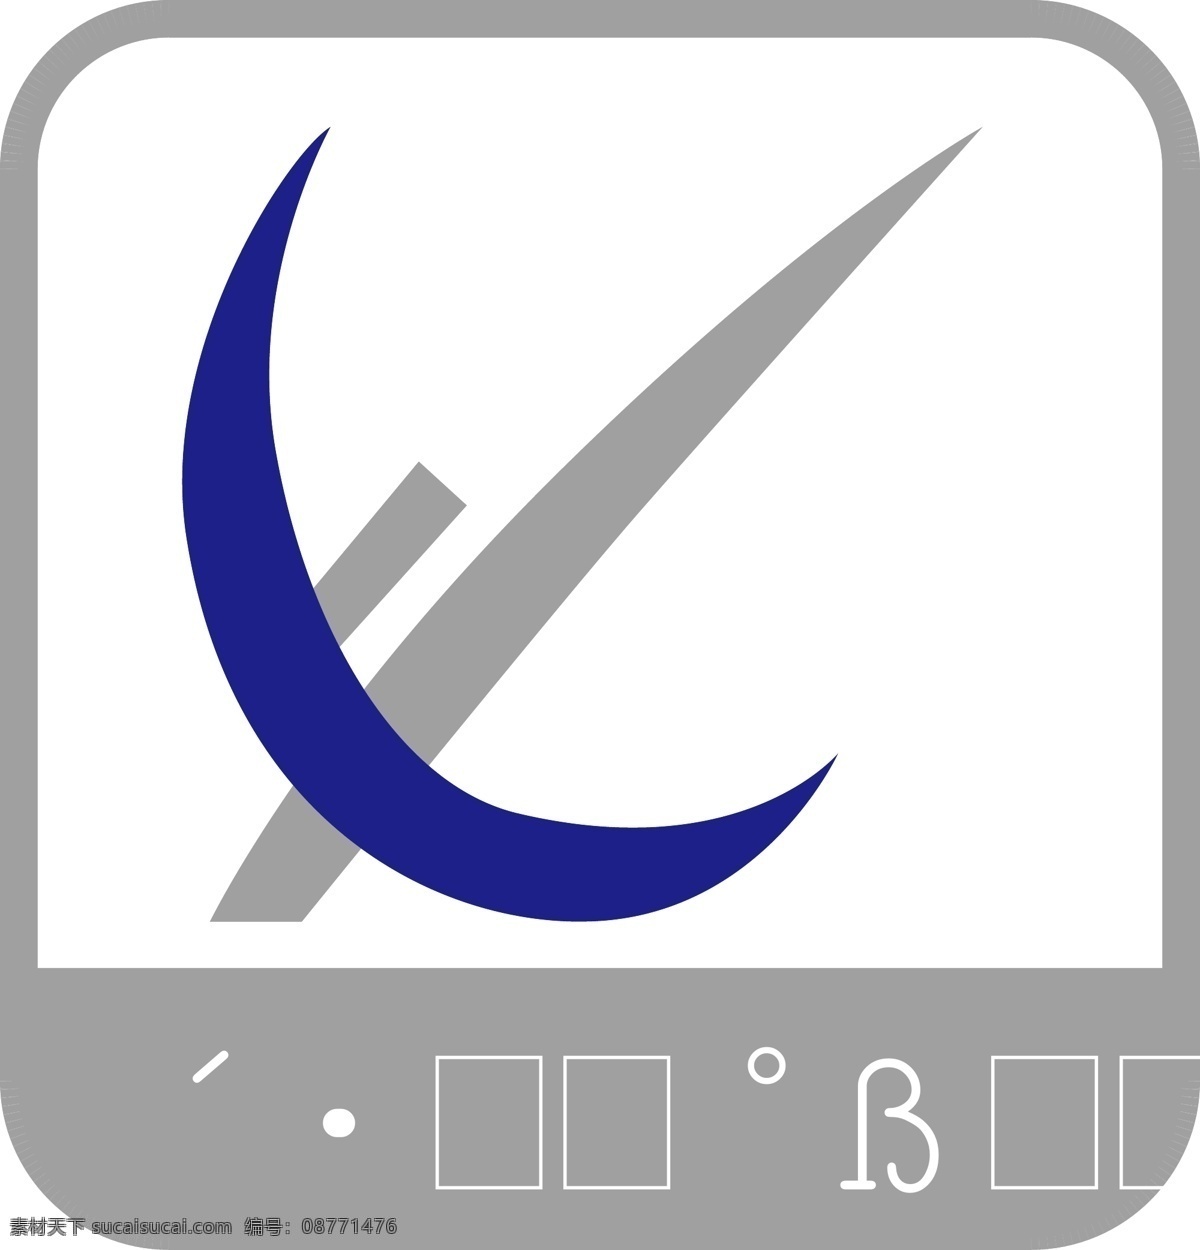 东岳 汽配 logo 矢量 模板下载 东 岳 标志 企业 标识标志图标 白色